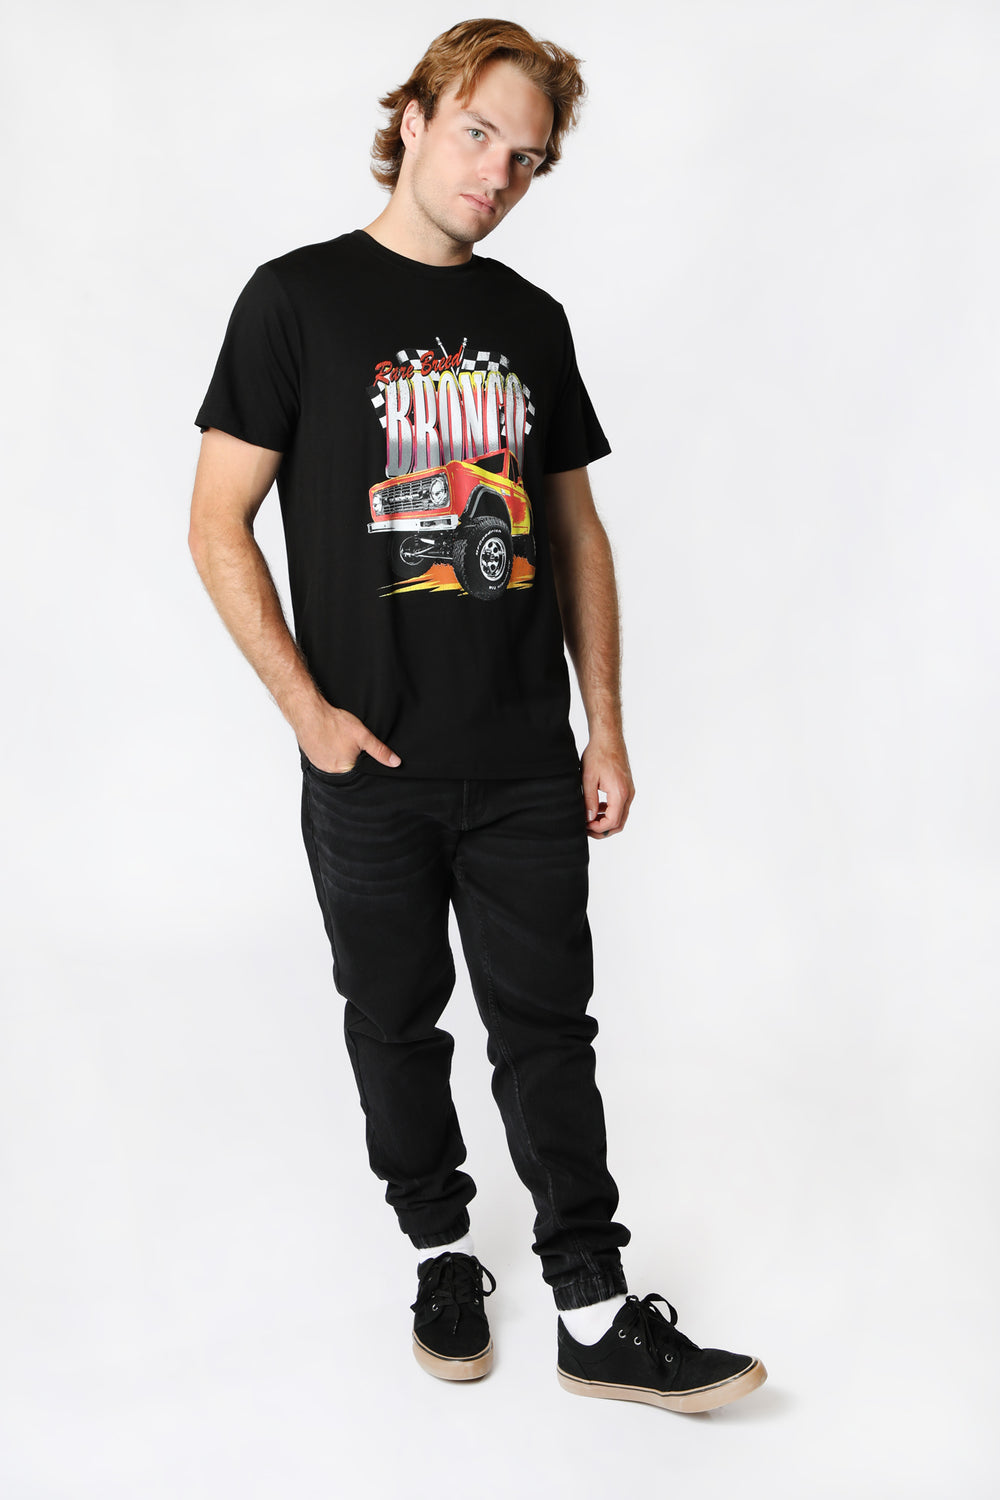 T-Shirt Imprimé Bronco Homme Noir